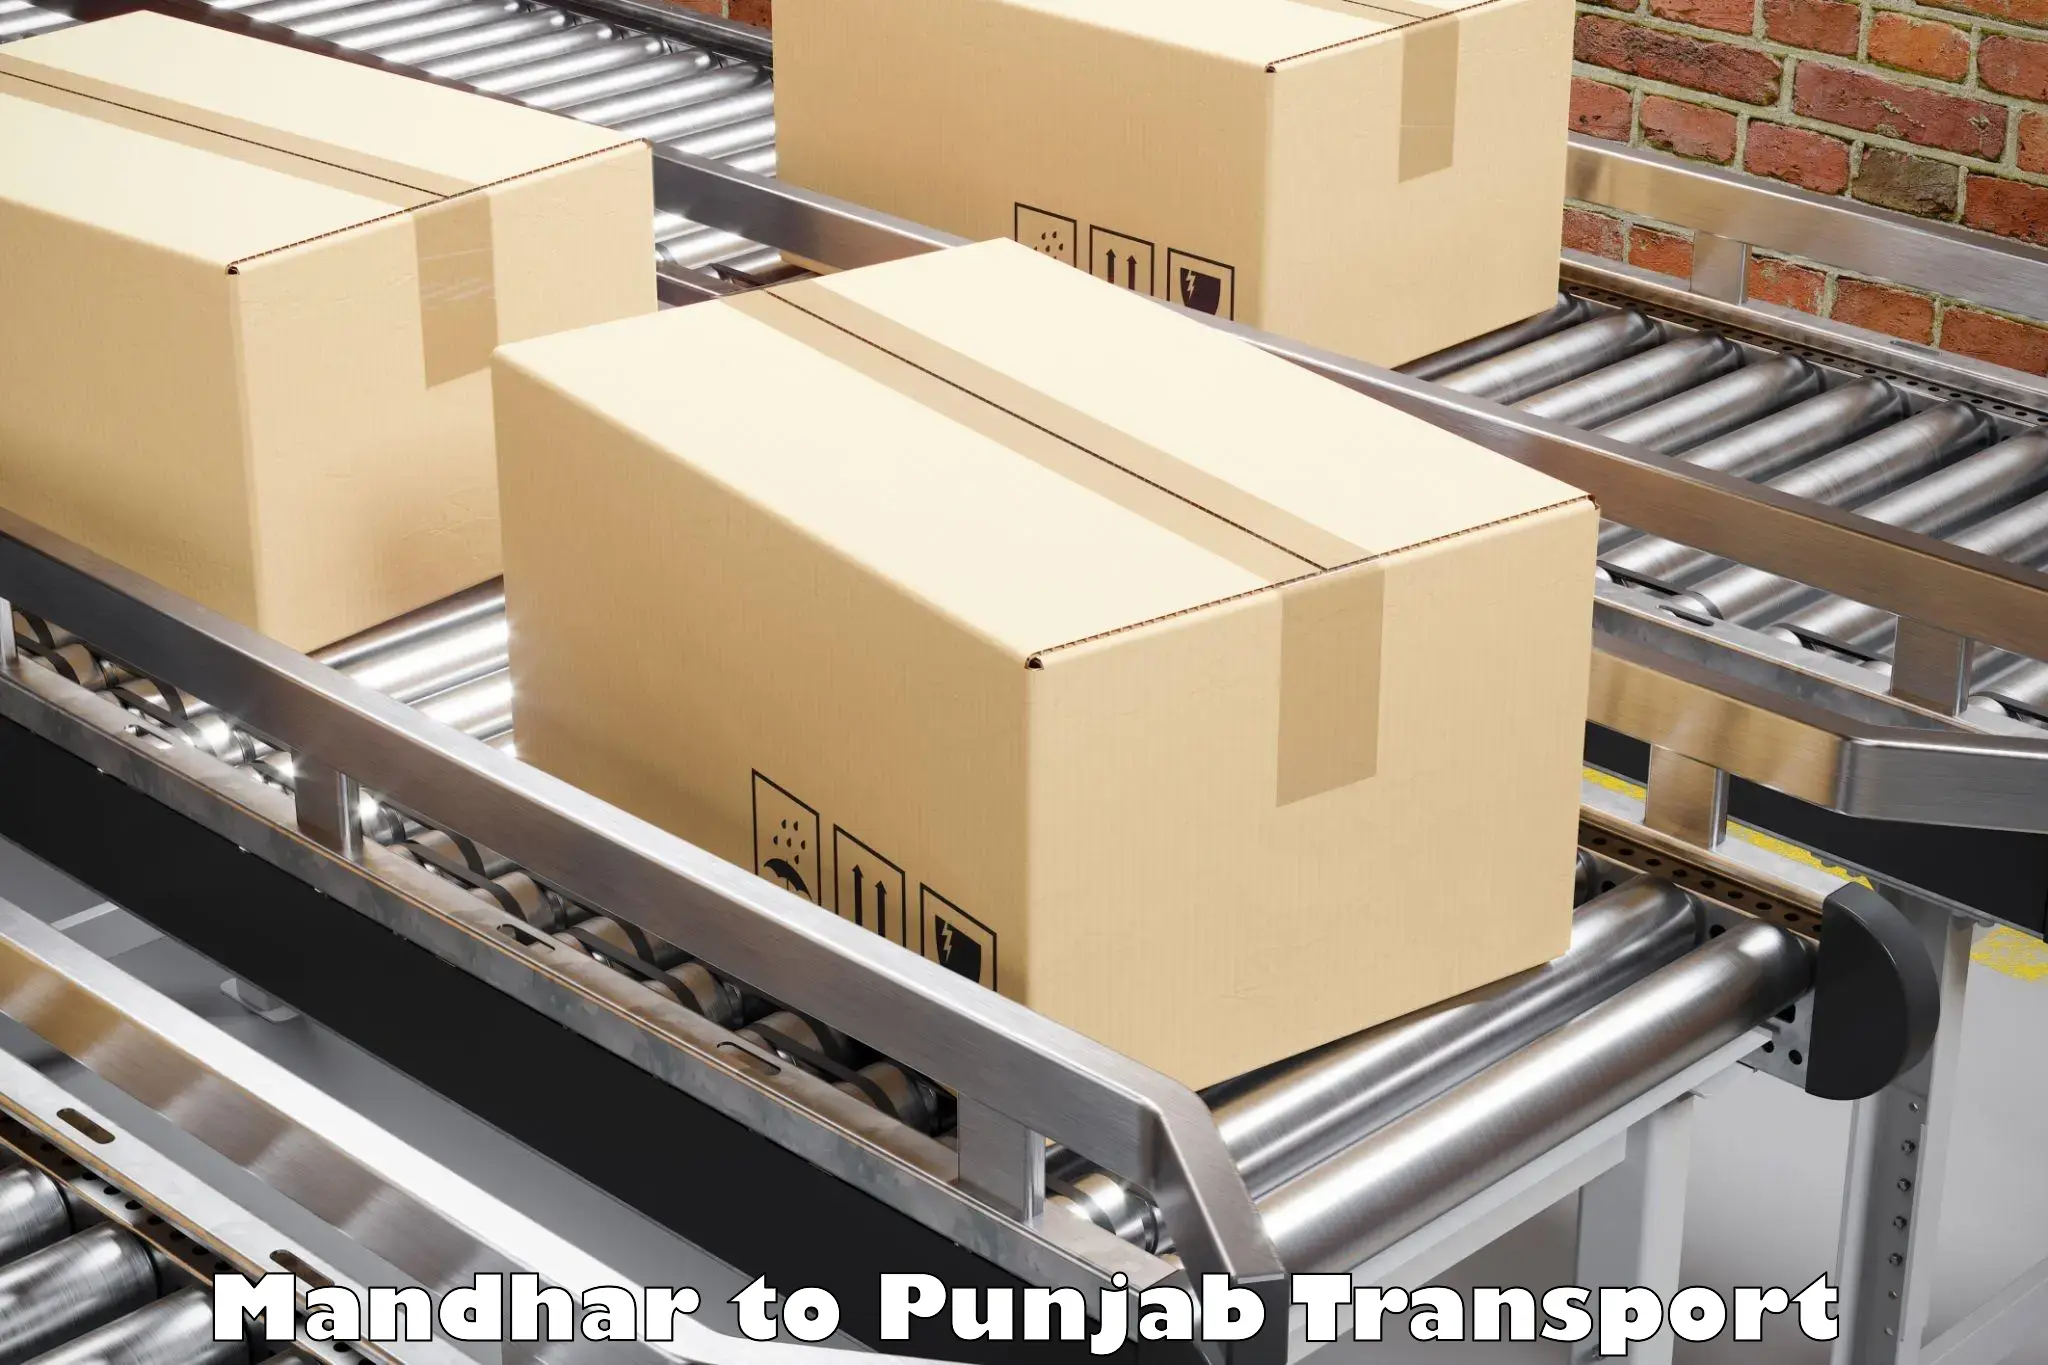 Cargo train transport services Mandhar to Punjab